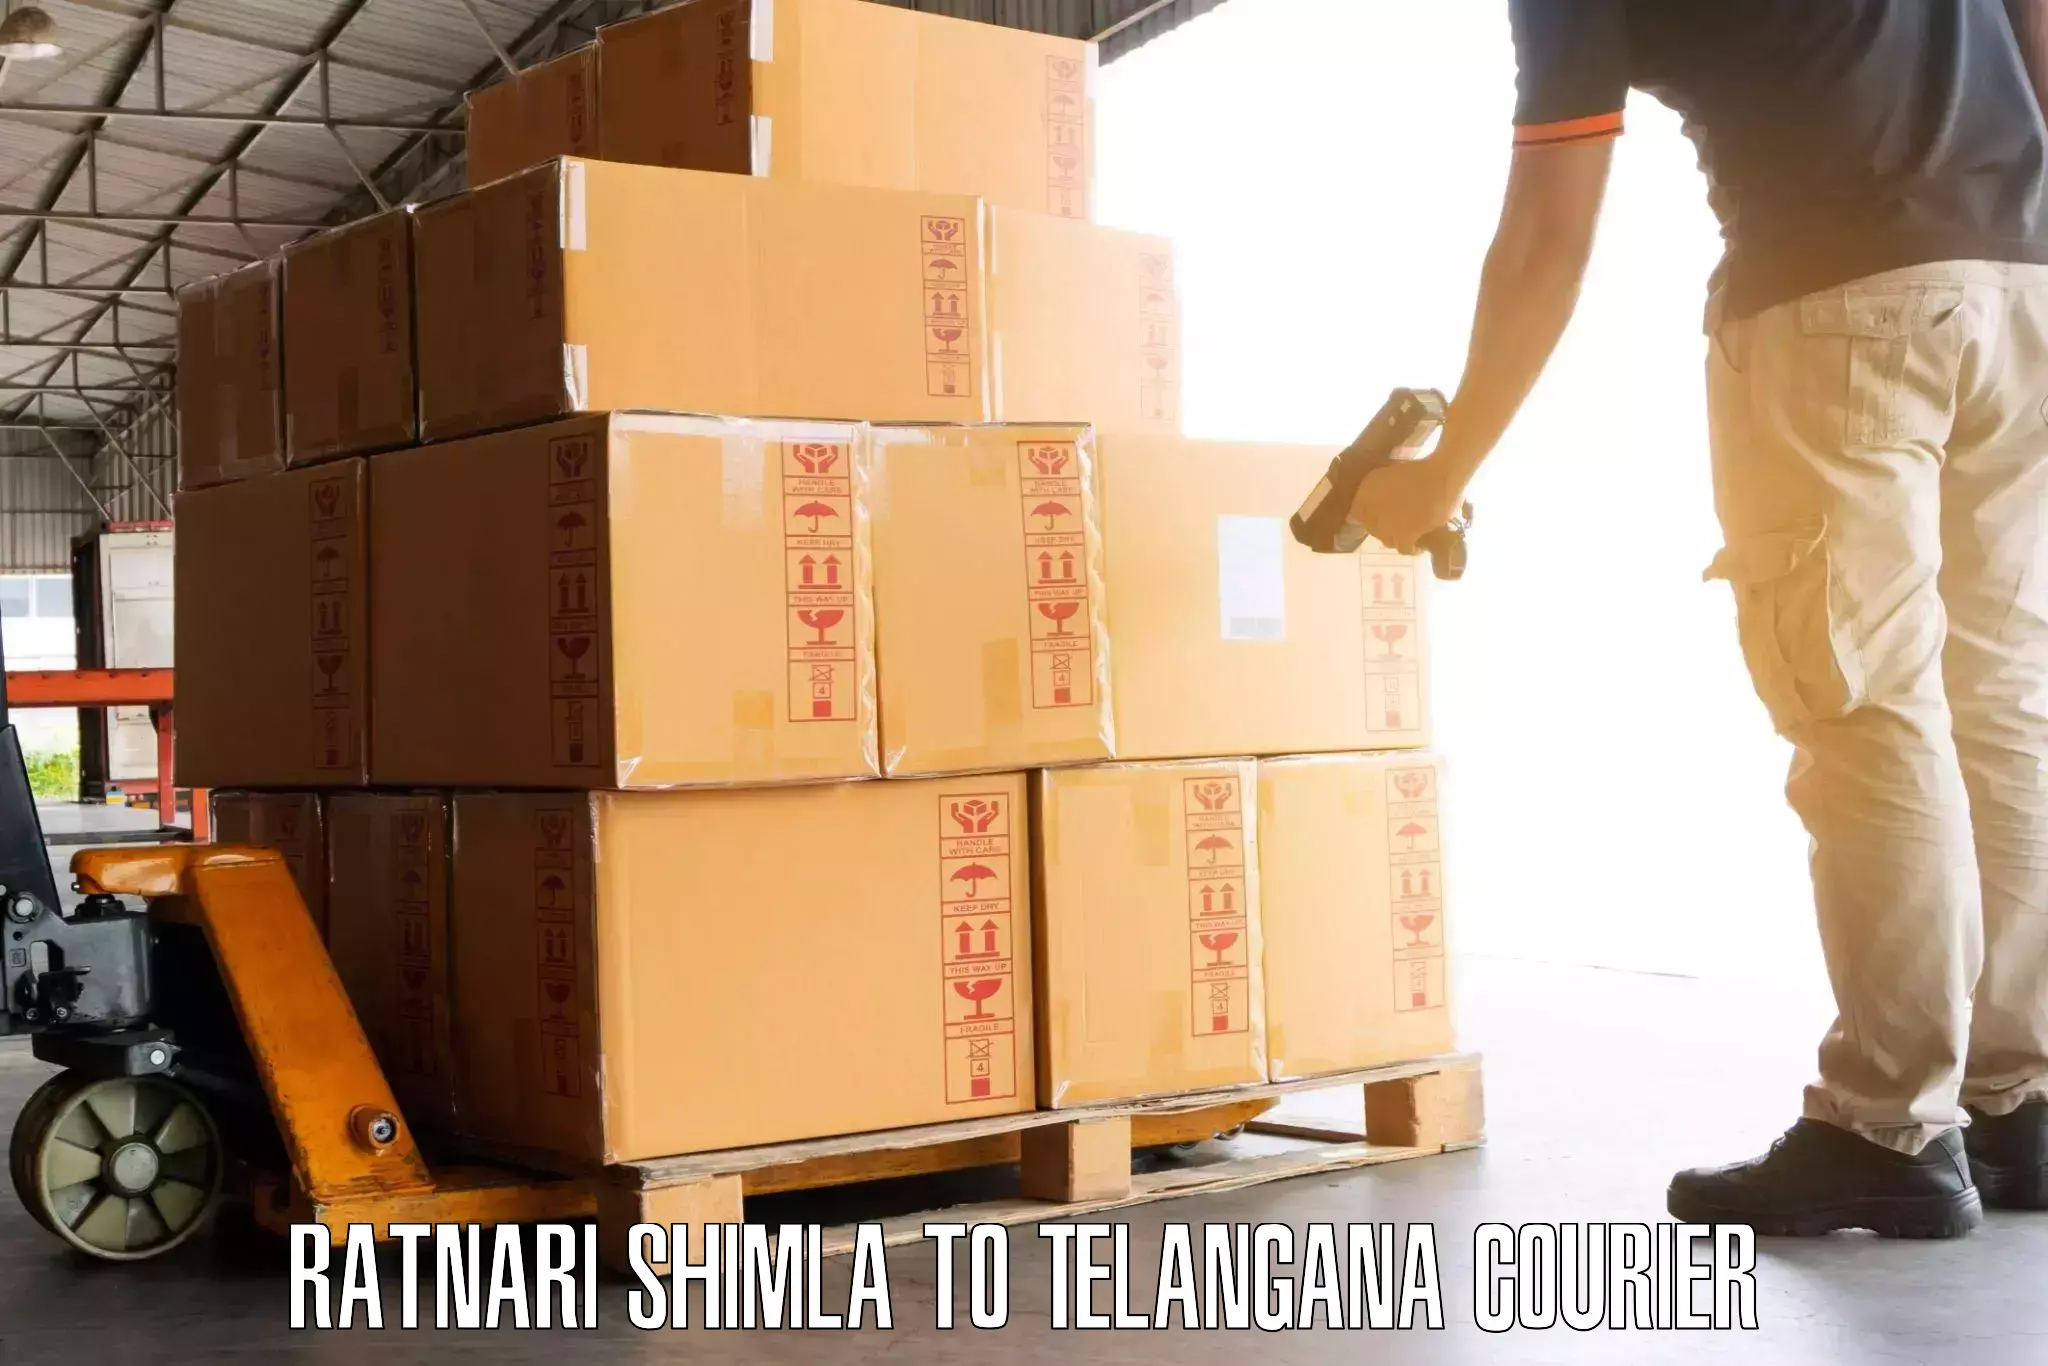 Luggage shipment specialists in Ratnari Shimla to Madnoor